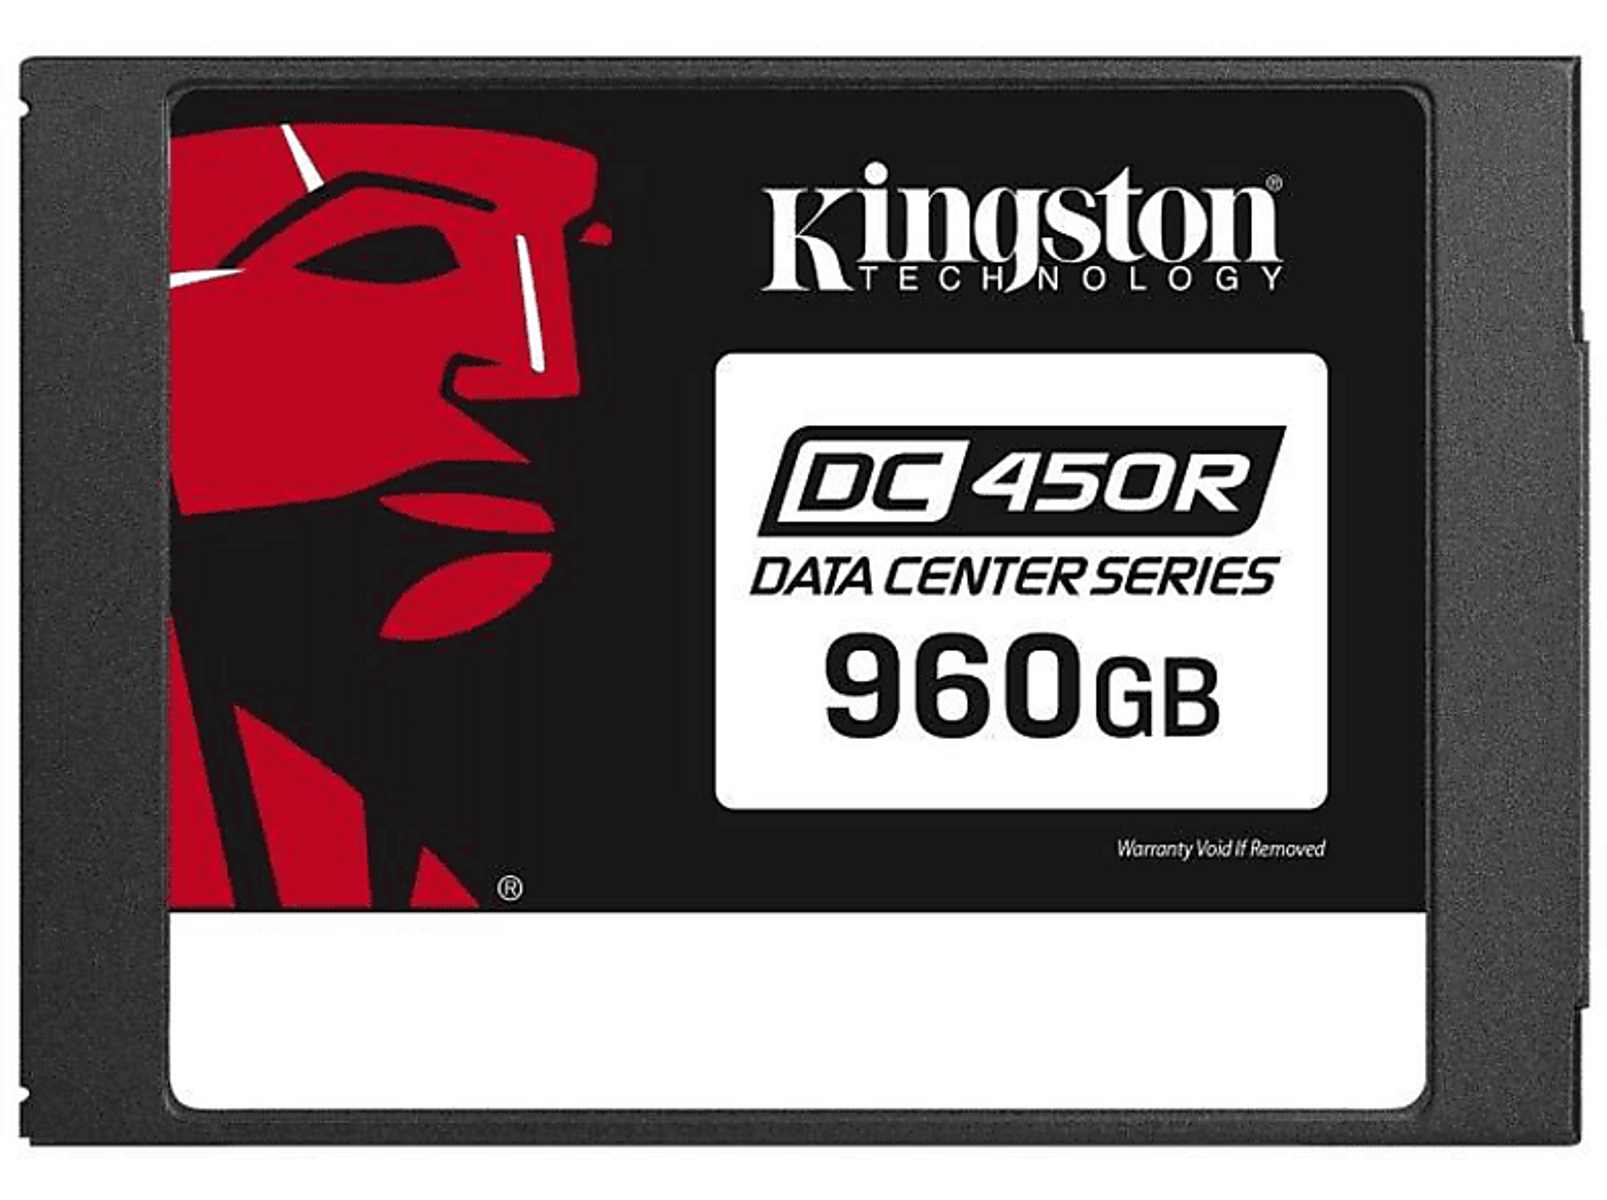 KINGSTON Kingston Zoll, SATA GB, DC450R 2,5 SSD, Data 960GB Center verschlüsselt), intern (SSD 960 - 6Gb/s, intern